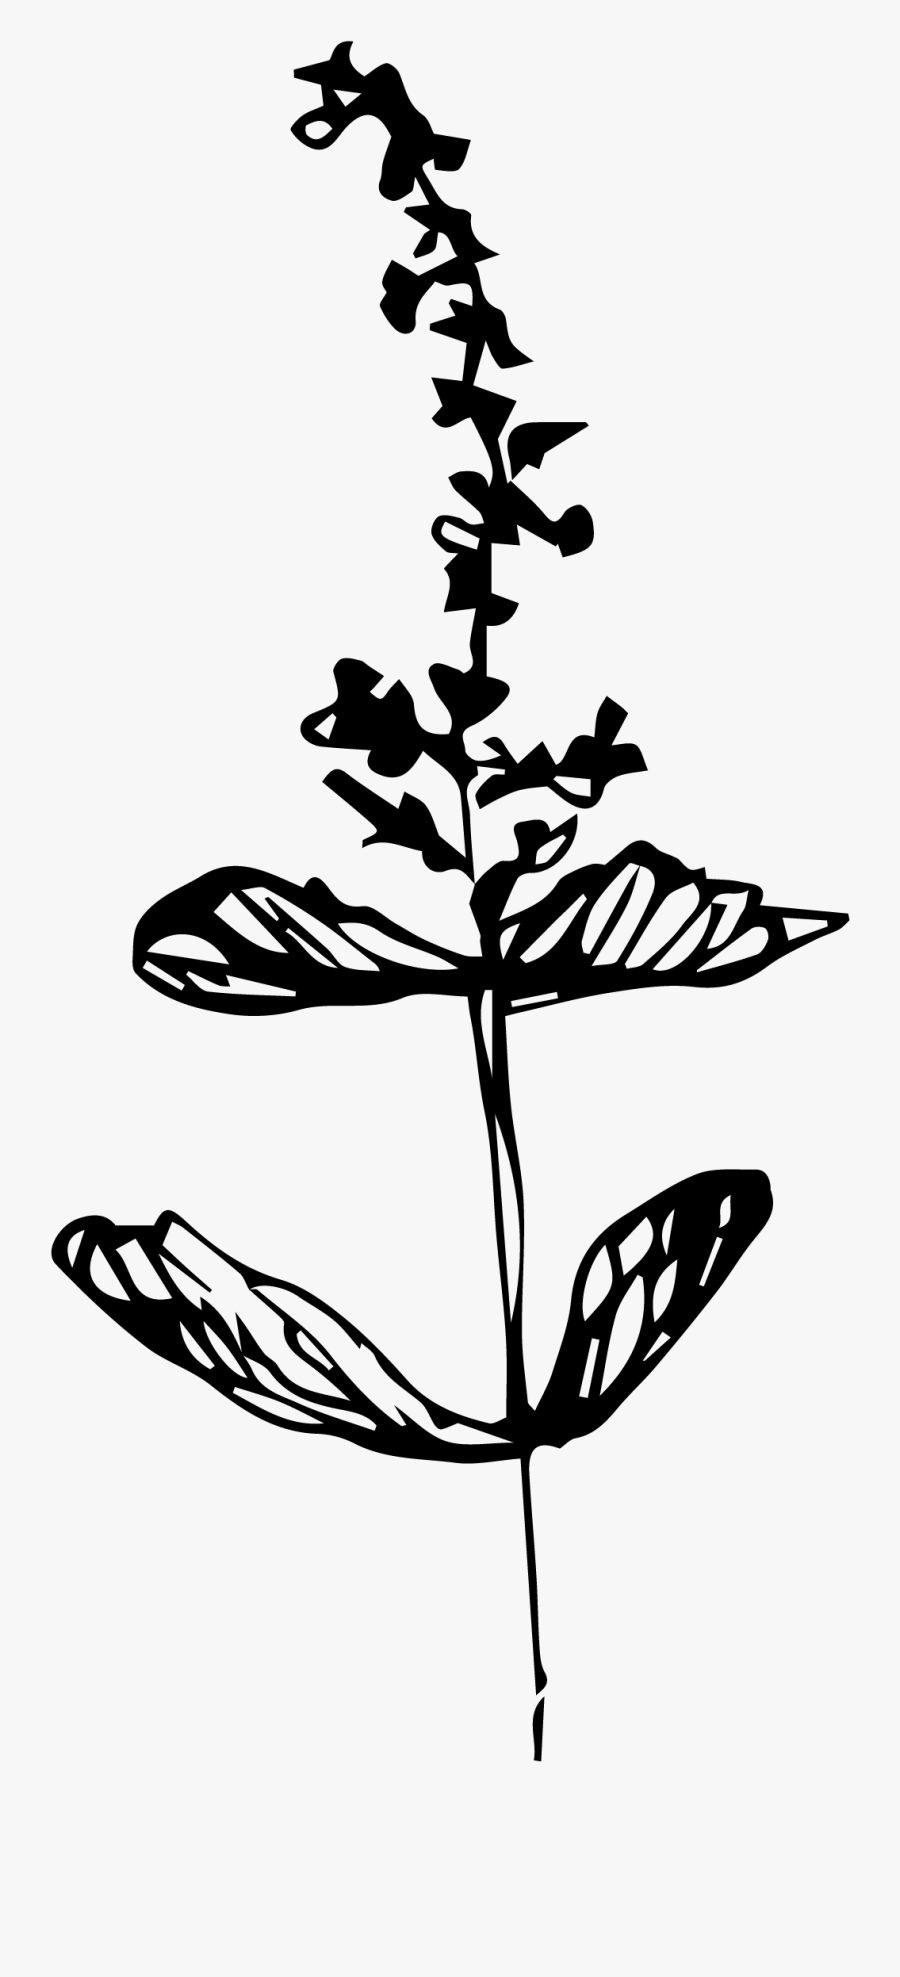 Elemental Herbalism Webinar The - Illustration, Transparent Clipart